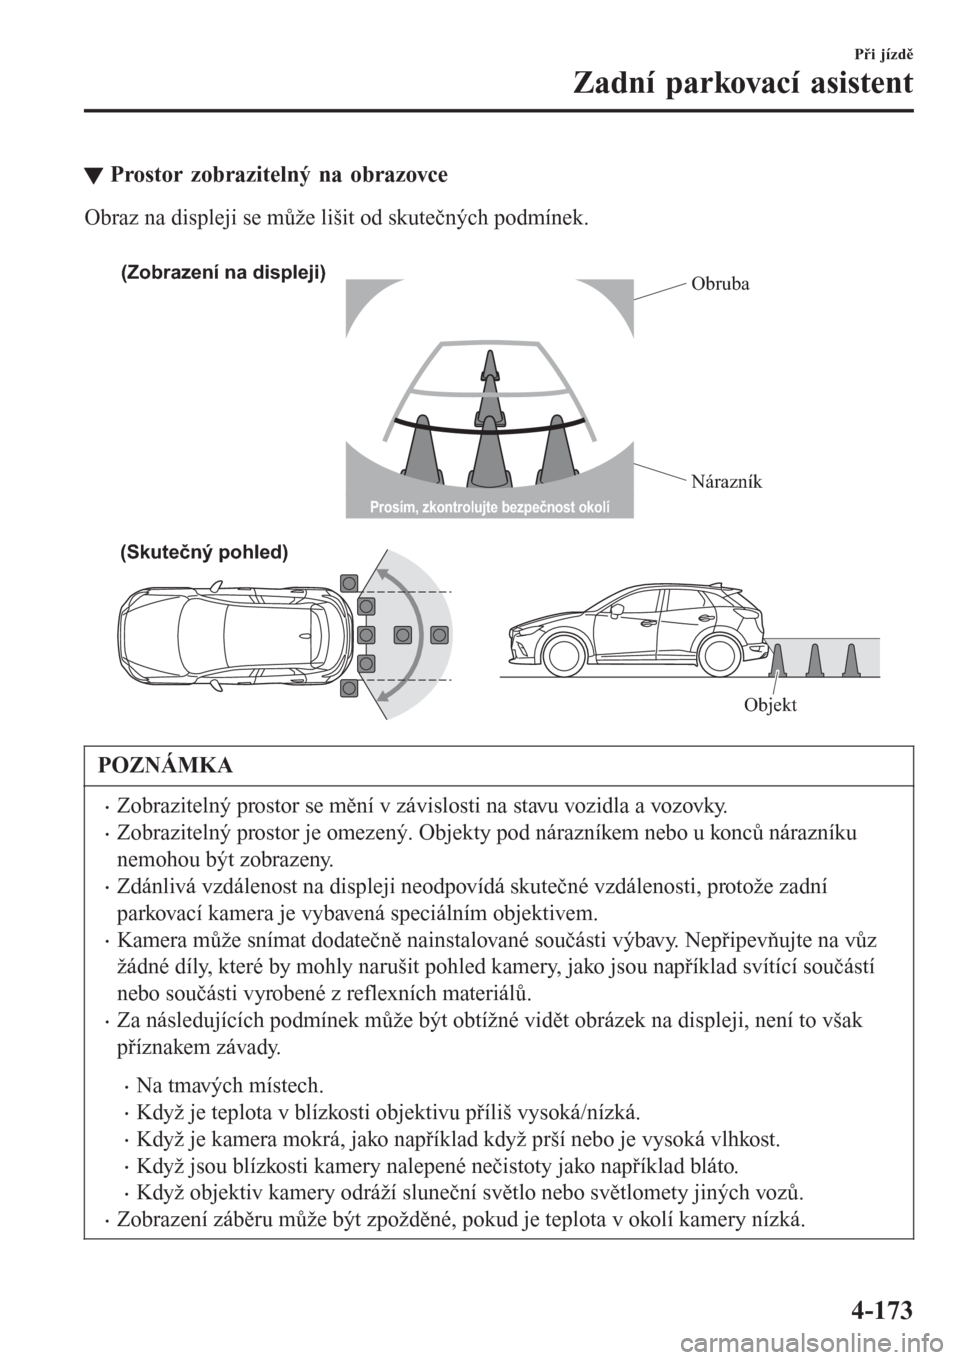 MAZDA MODEL CX-3 2016  Návod k obsluze (in Czech) tProstor zobrazitelný na obrazovce
Obraz na displeji se může lišit od skutečných podmínek.
 
(Zobrazení na displeji)
Obruba
Nárazník
(Skutečný pohled)
Objekt
Prosím, zkontrolujte bezpečn